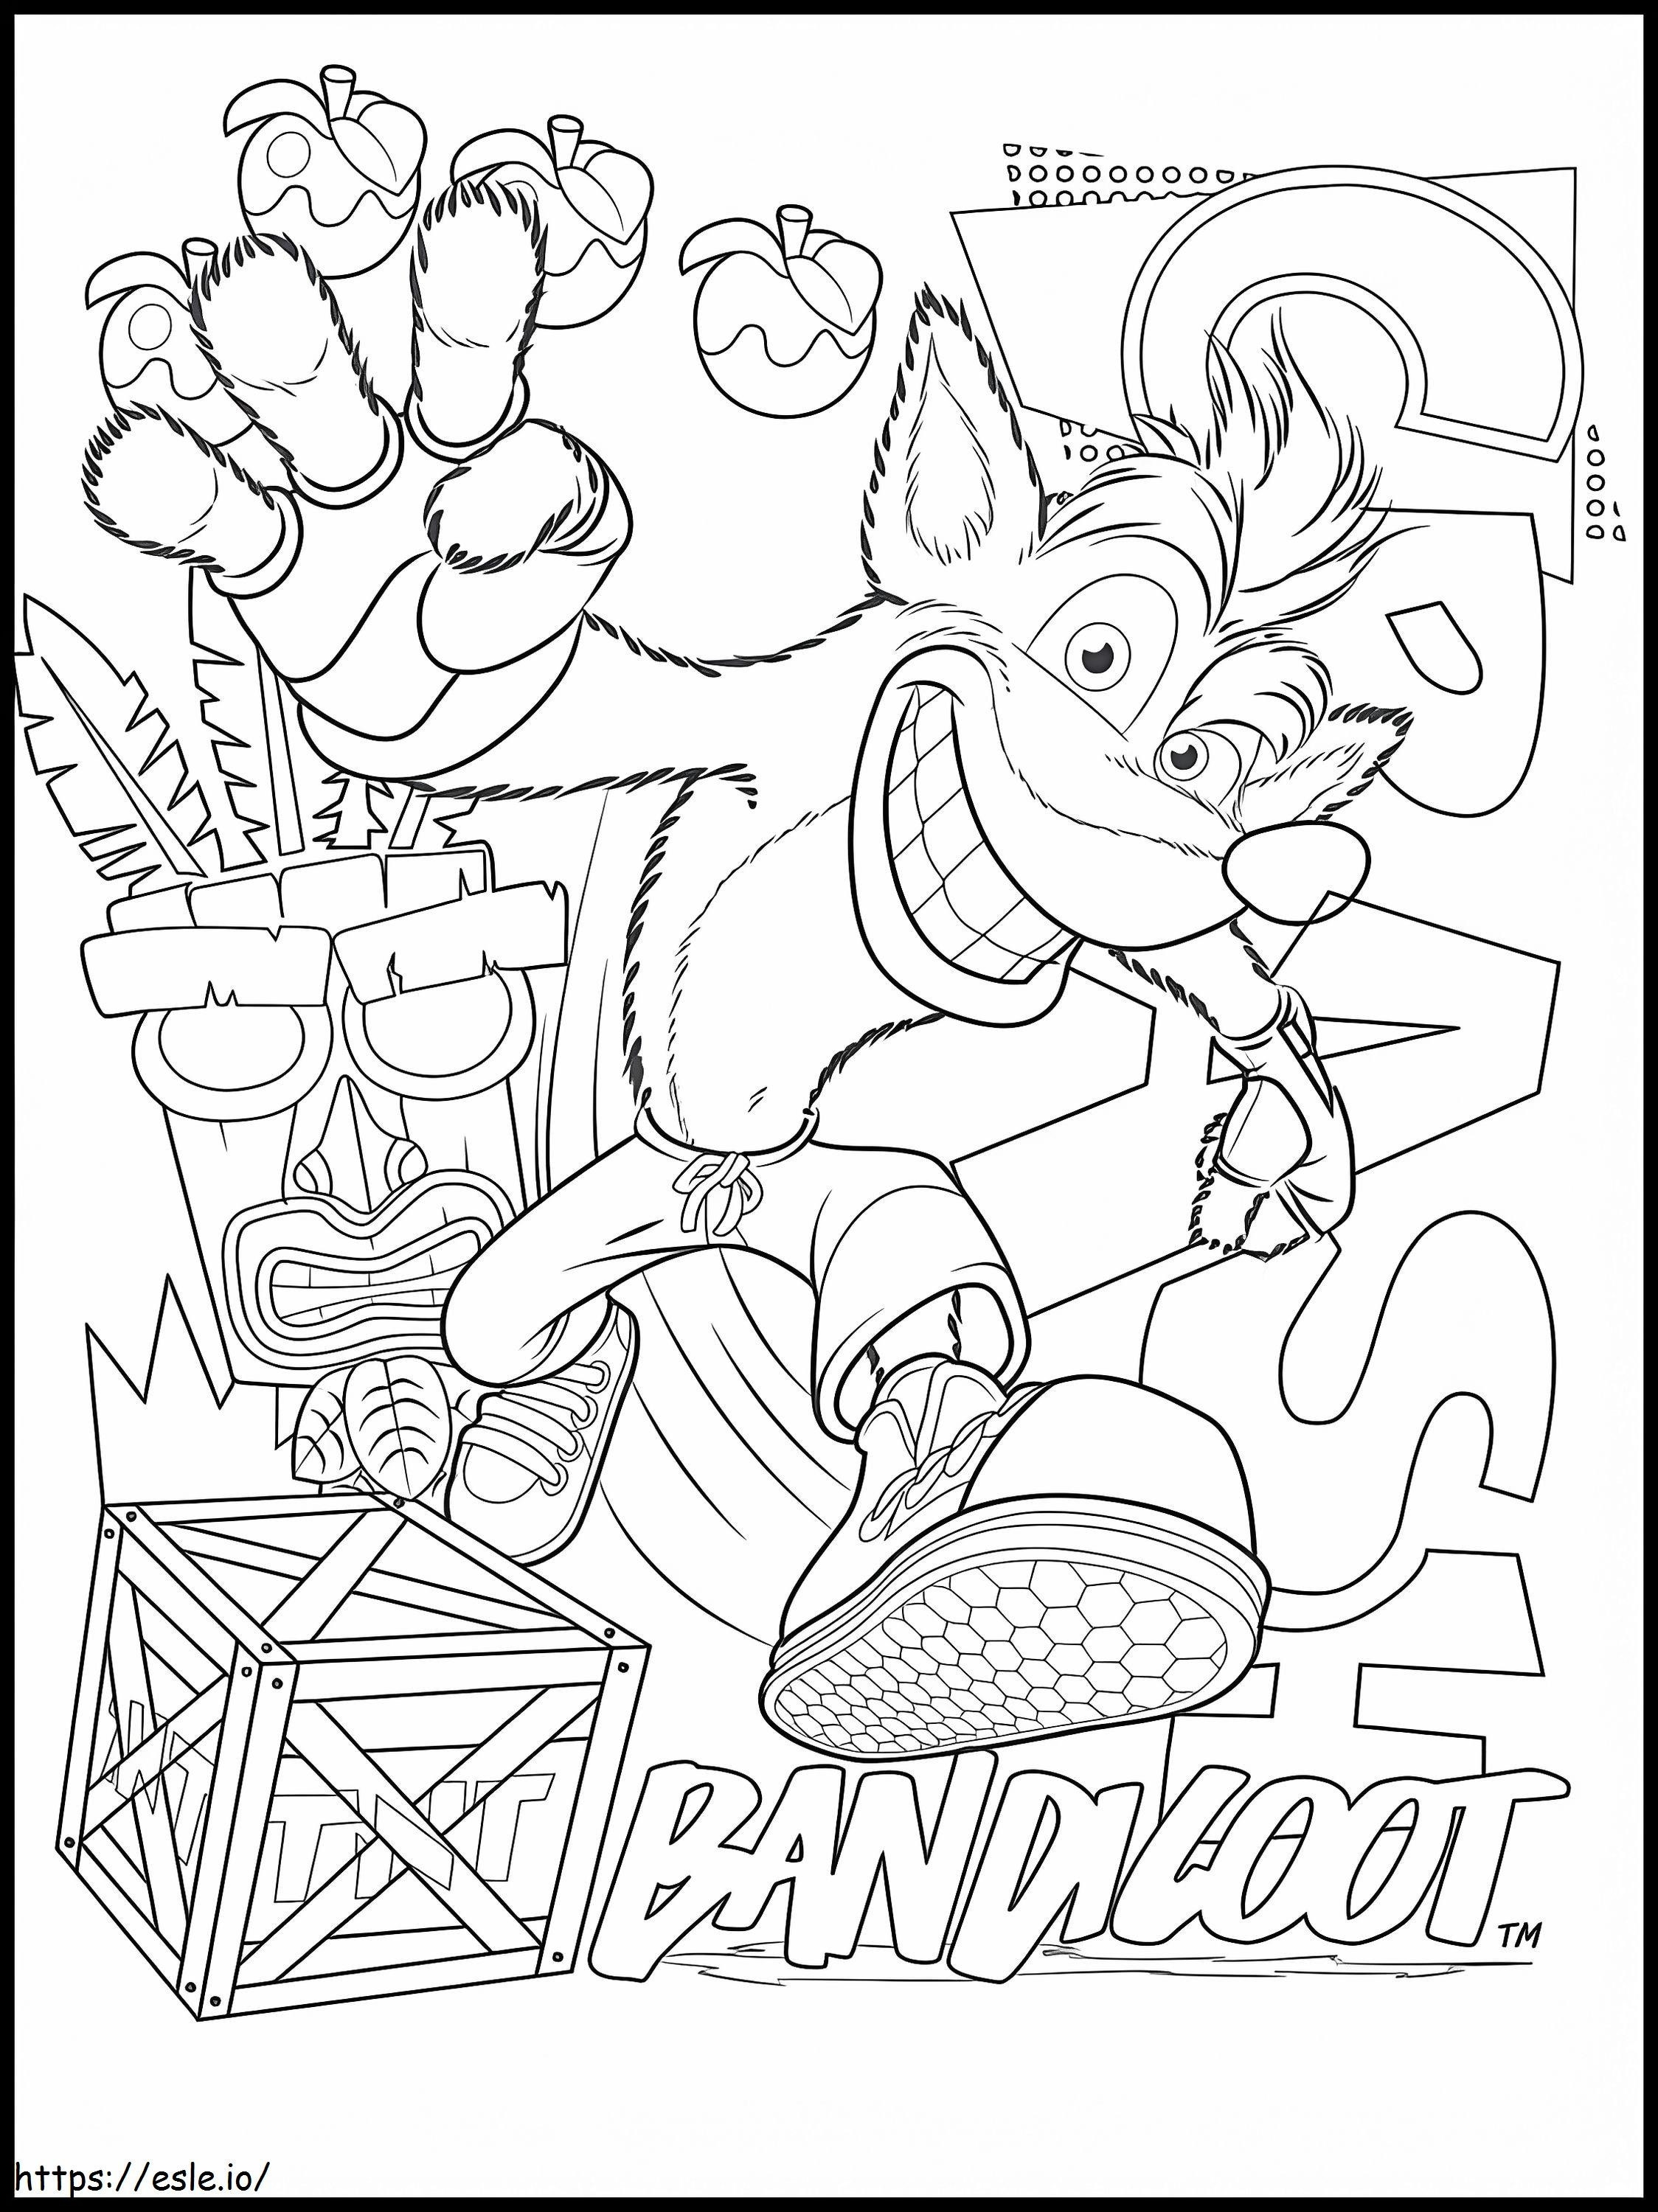 Crash Bandicoot 4 ausmalbilder